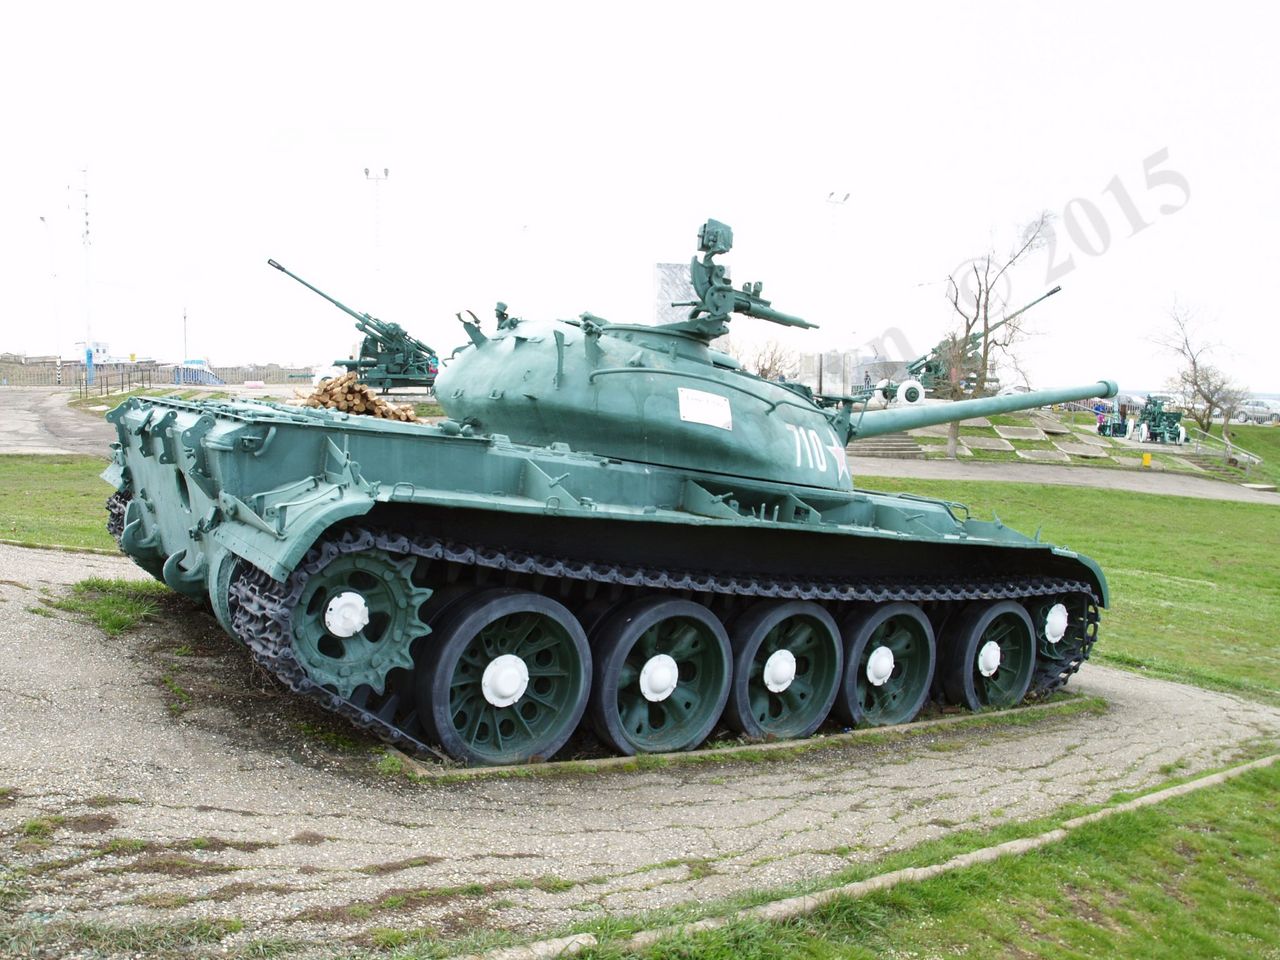 T-54A_44.jpg